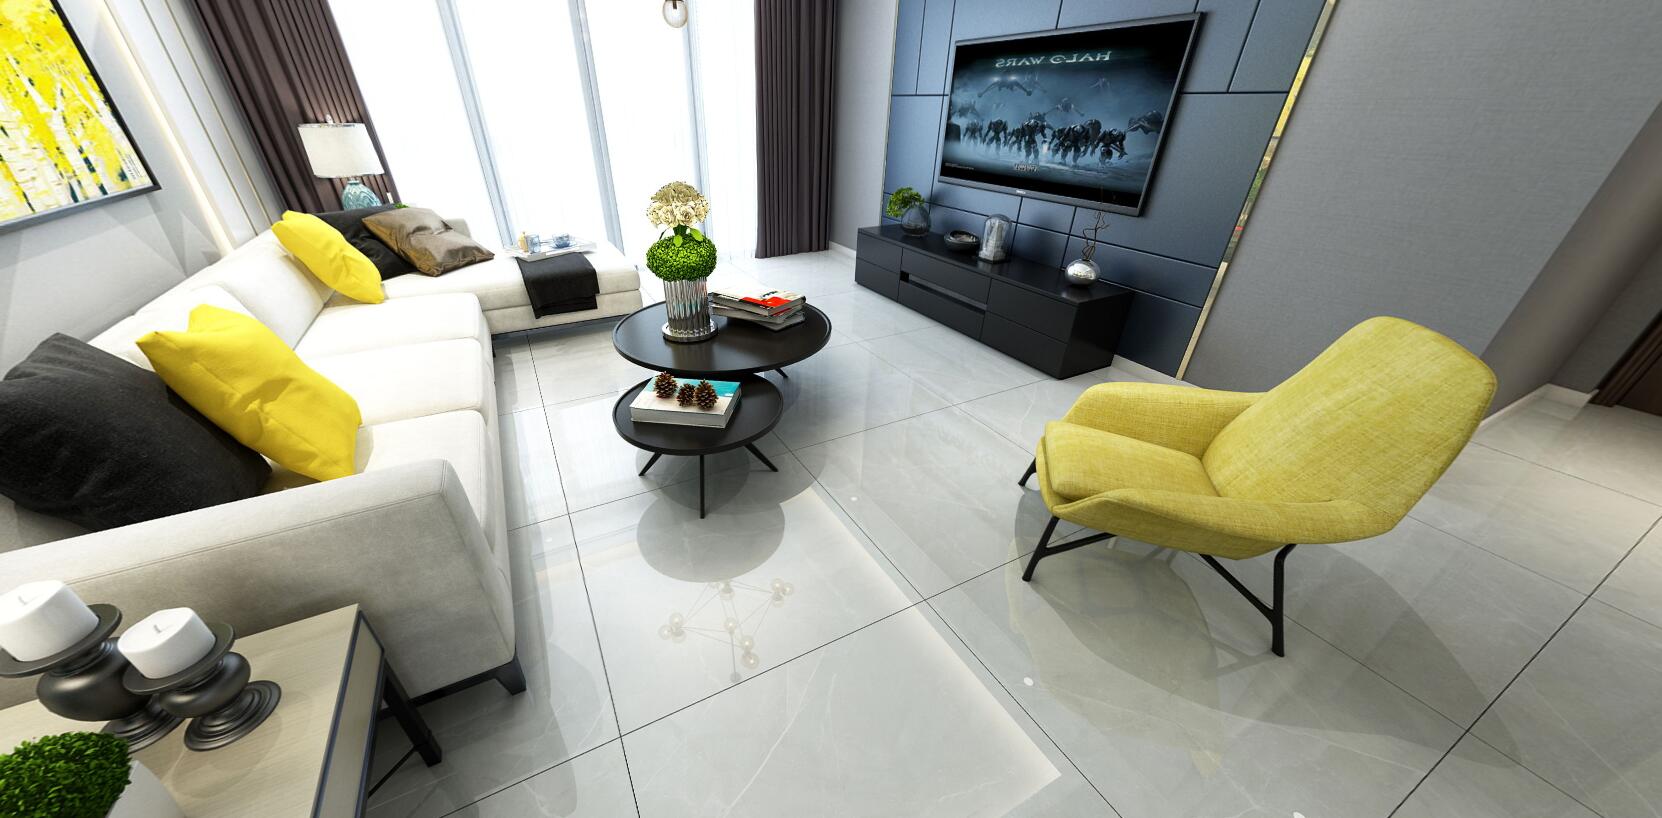 大理石瓷砖维纳斯灰IPGS90043客厅空间效果图2